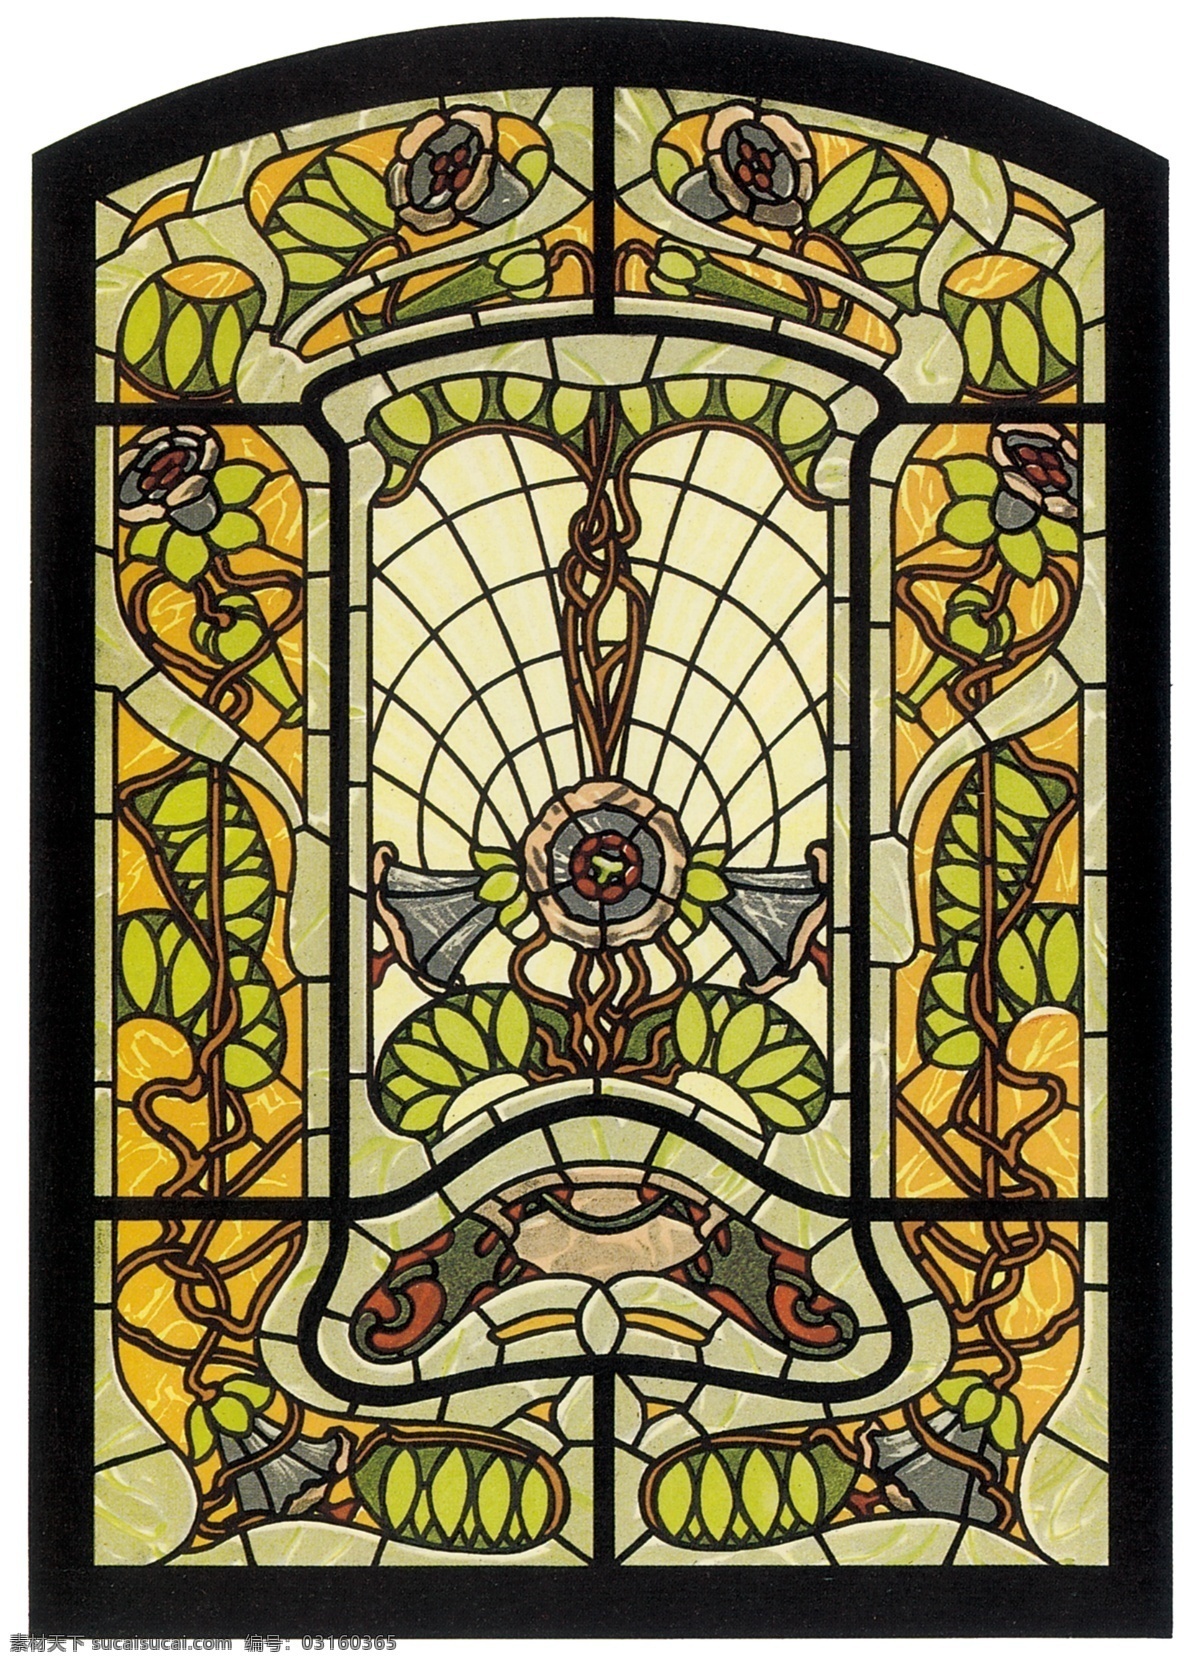 彩色玻璃图案 彩色 玻璃 欧洲 古典 传统 教堂 宗教 图案 设计素材 宗教信仰 文化艺术